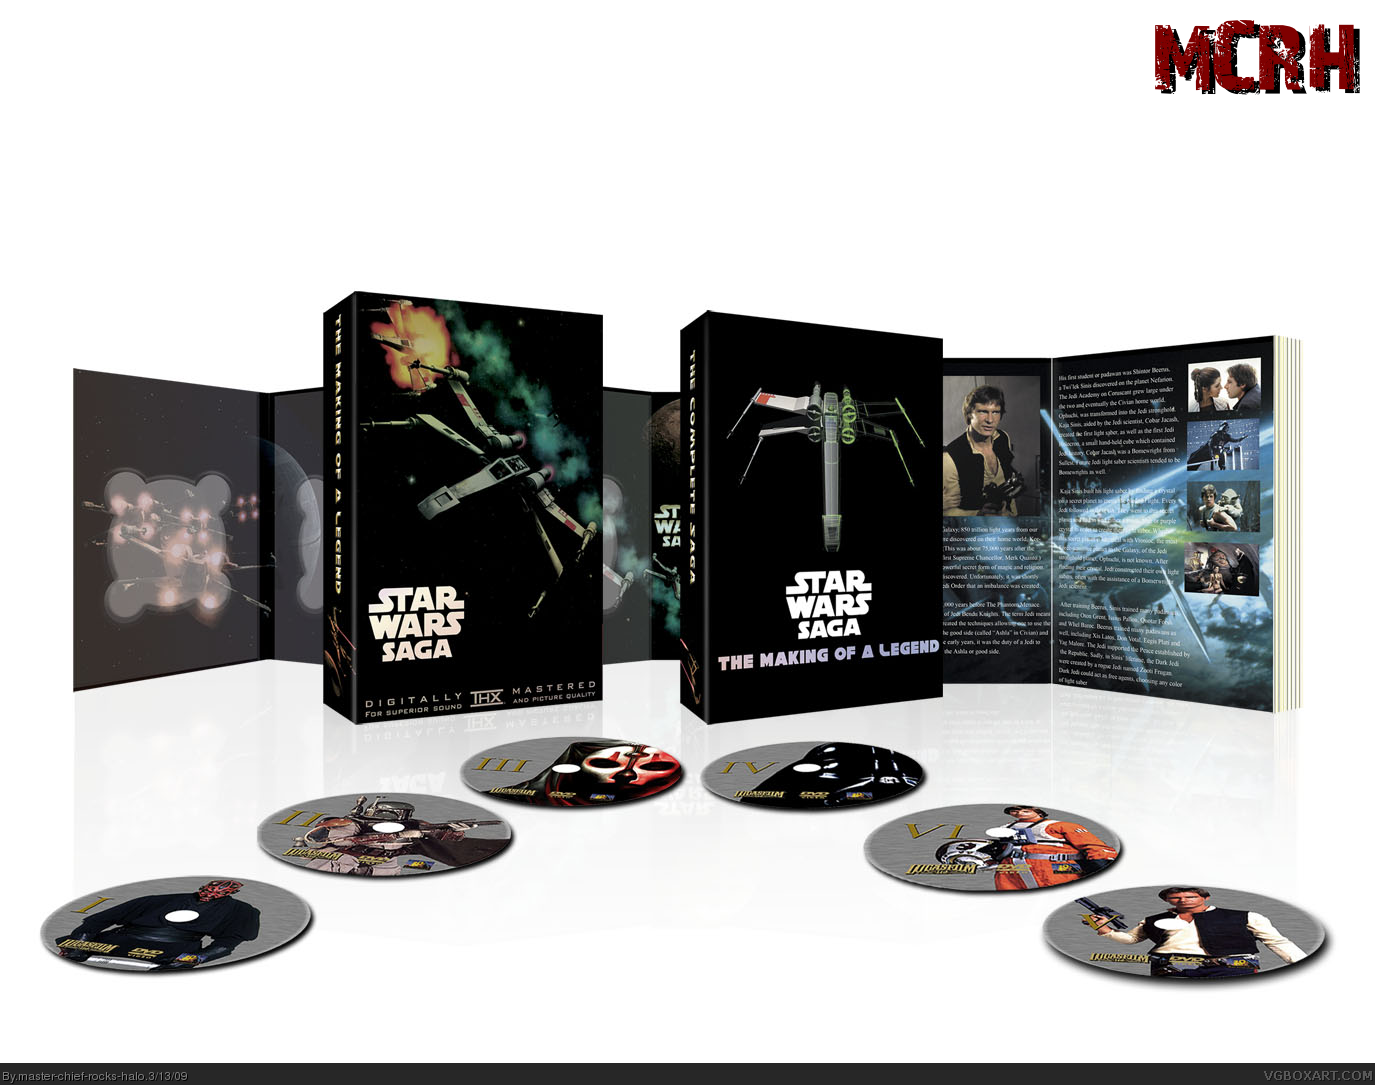 Star Wars Saga box cover